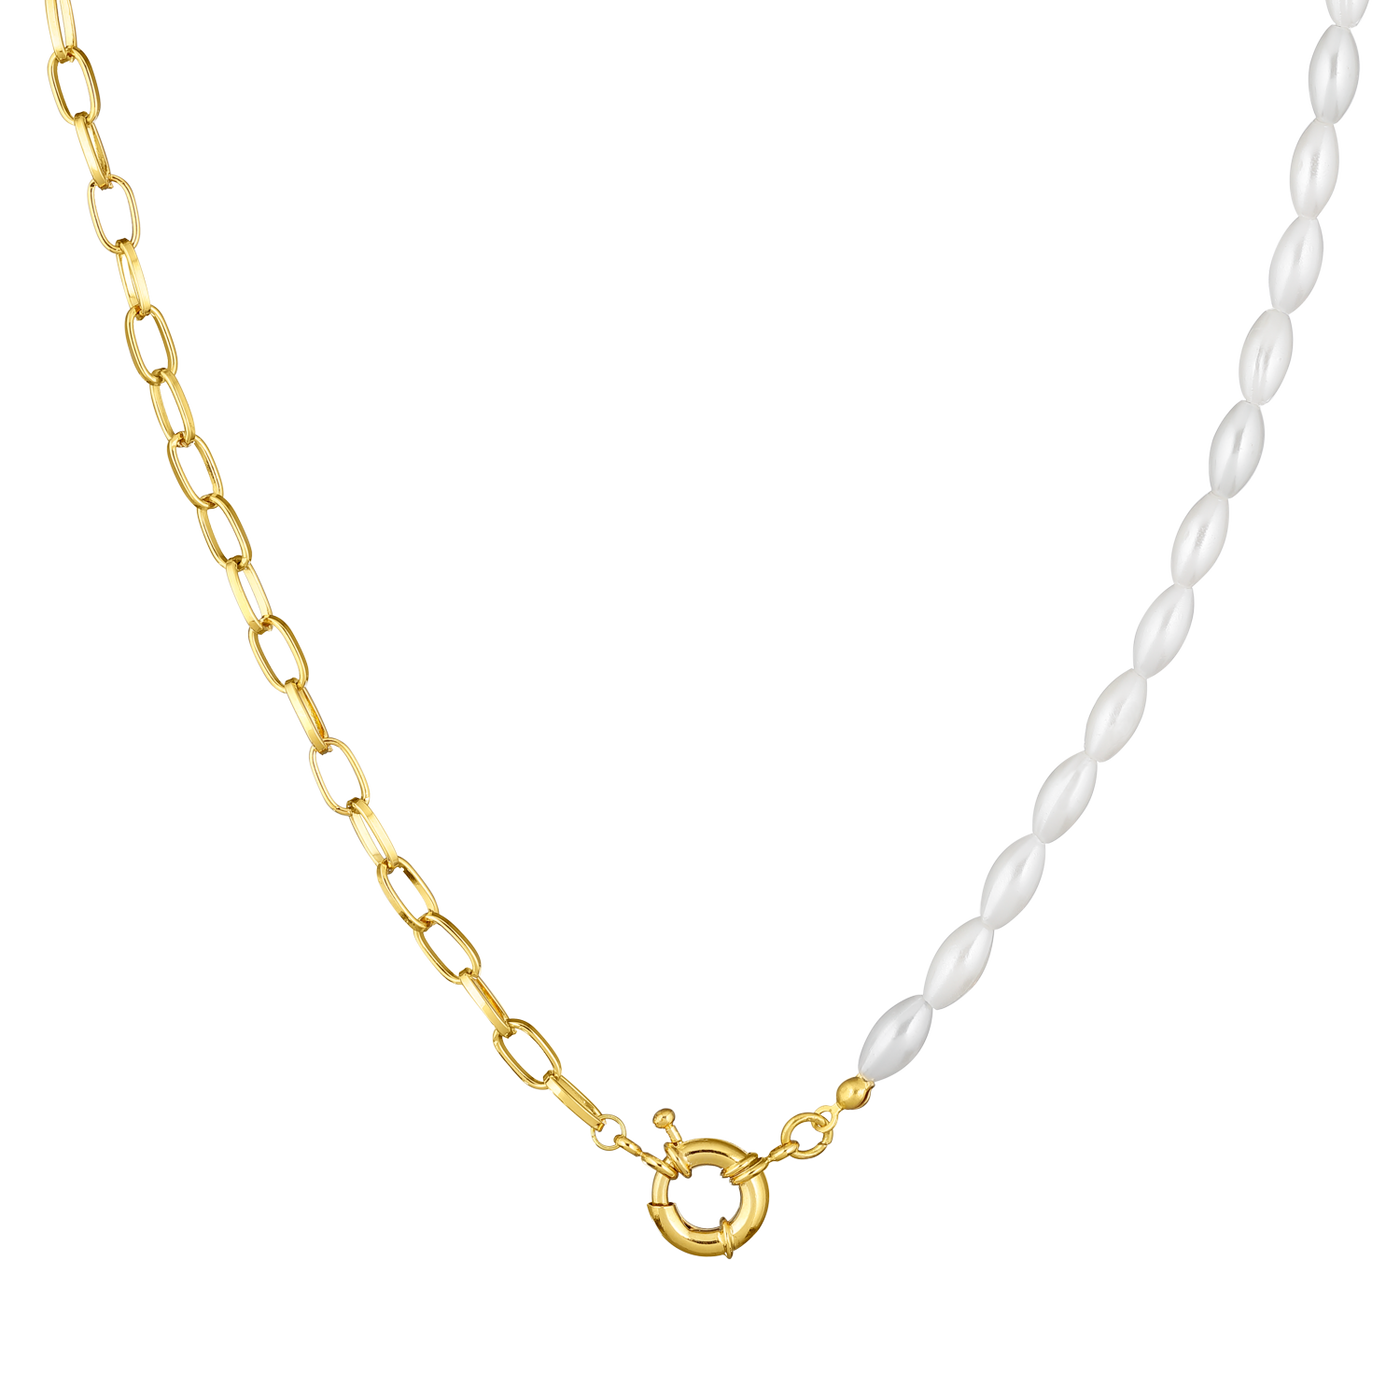 Halskette Charming Pearls mit Verschluss